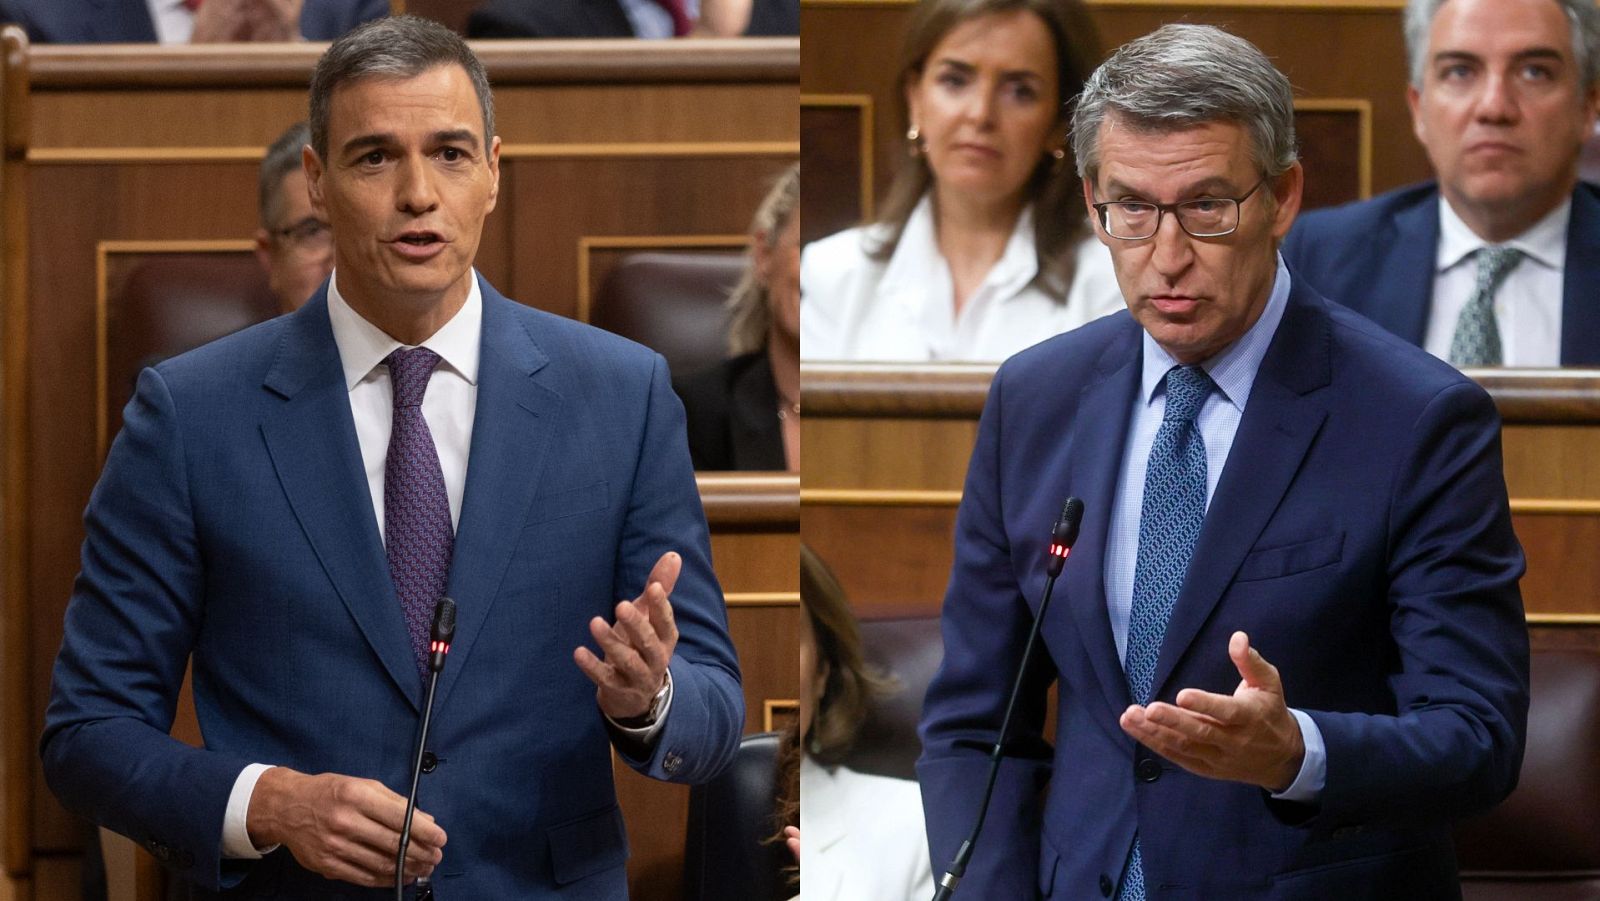 Feijóo cree que Sánchez "empieza a ser incompatible con la regeneración" y el presidente replica que "se le va a hacer larga la legislatura"